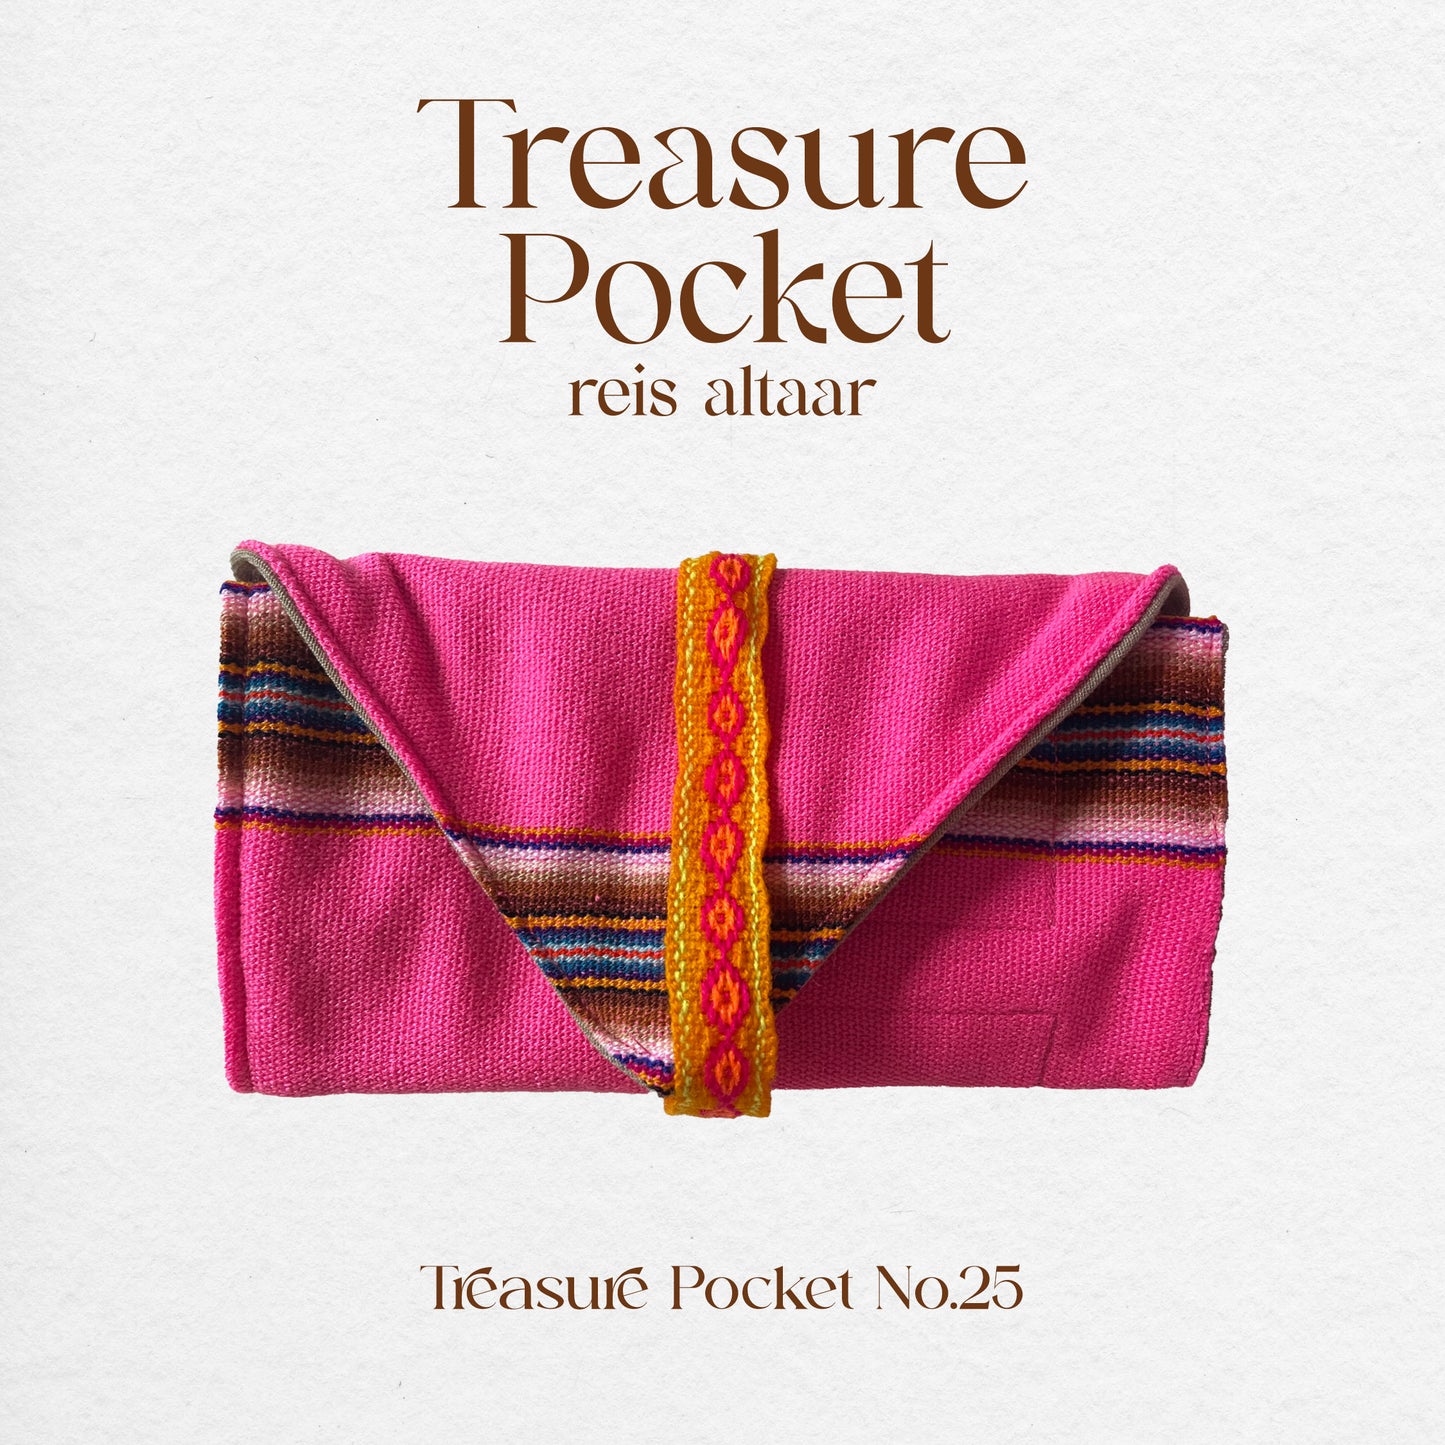 Treasure Pocket No.25